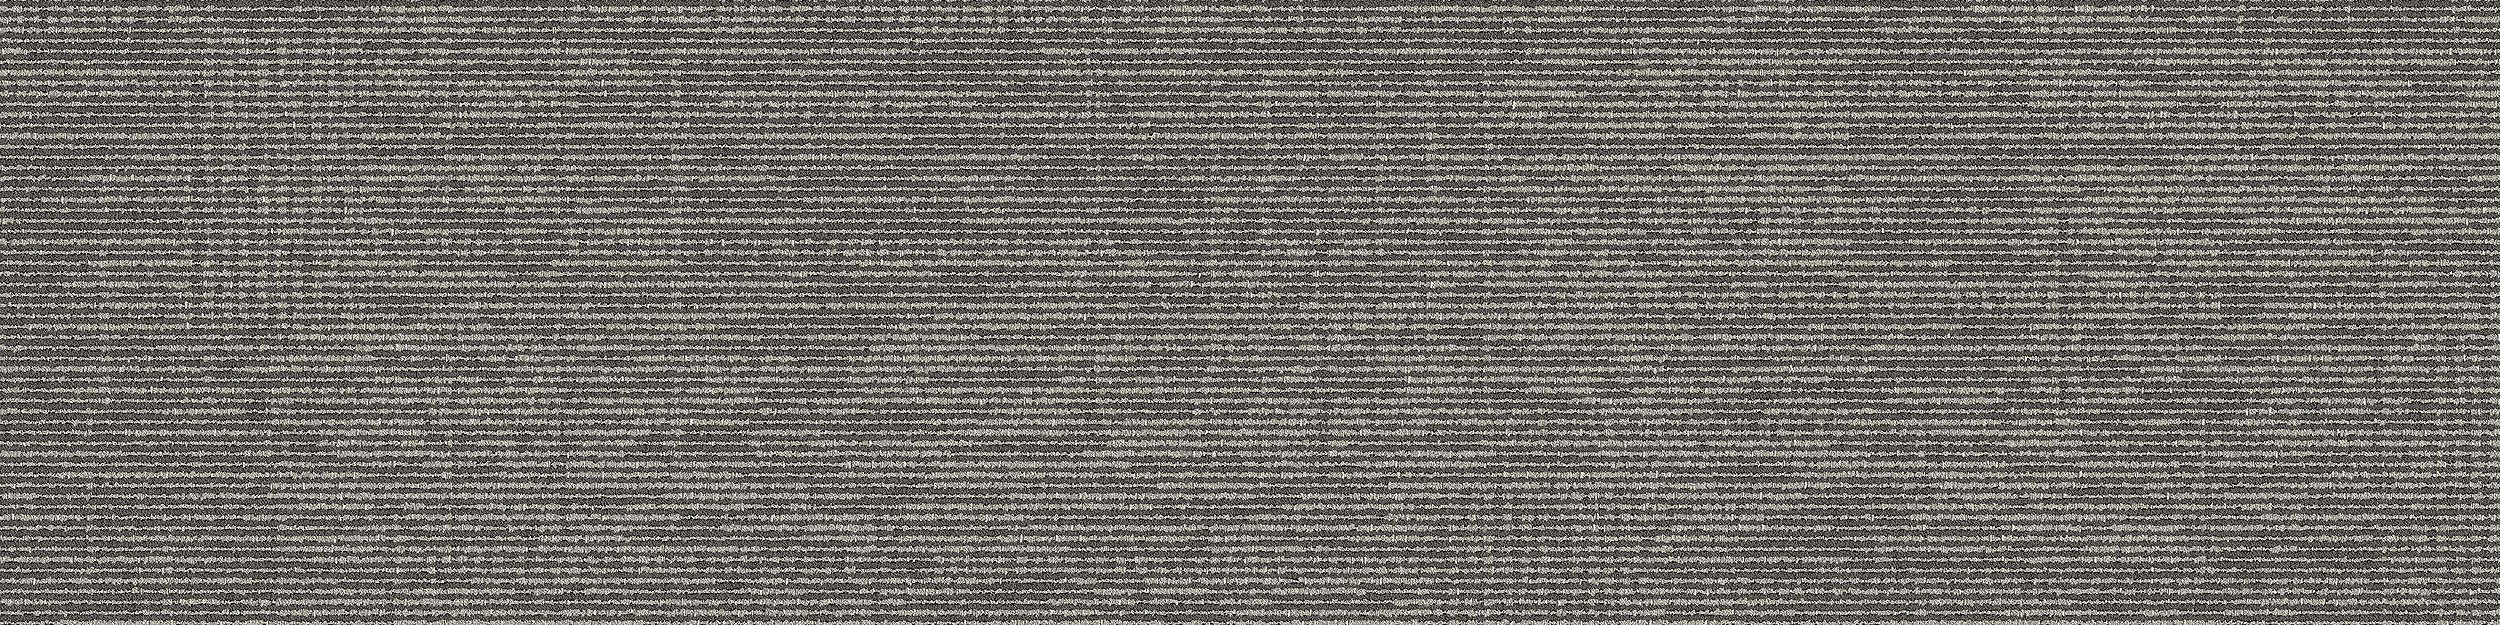 Zen Stitch Carpet Tile In Ash número de imagen 5